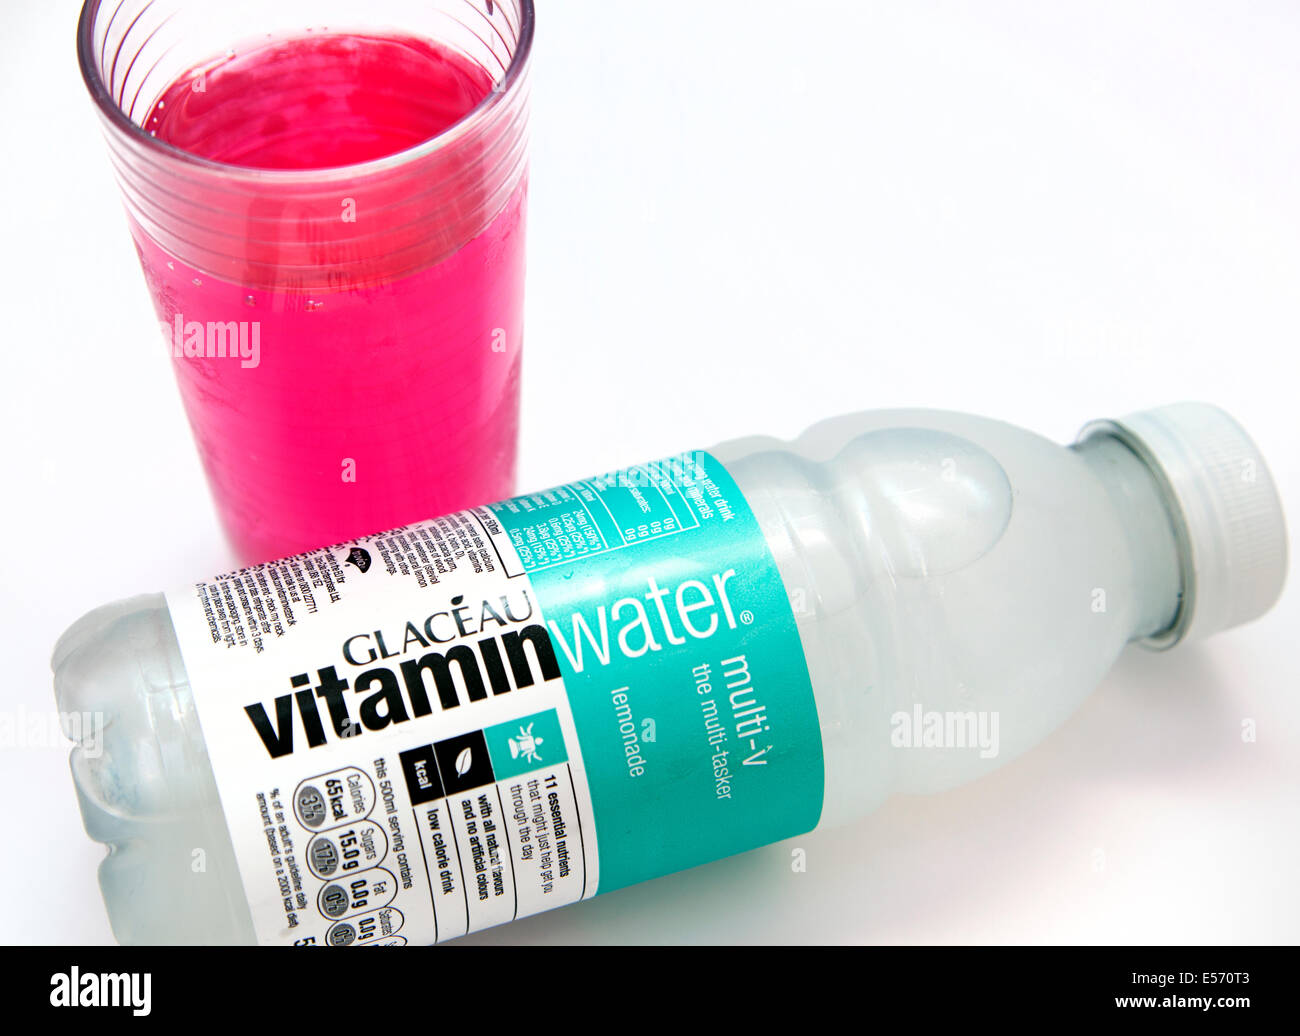 Vitamin Wasser Energy-Drink - Rapper 50 Cent ist ein Investor - jetzt im Besitz von Coca-Cola Stockfoto